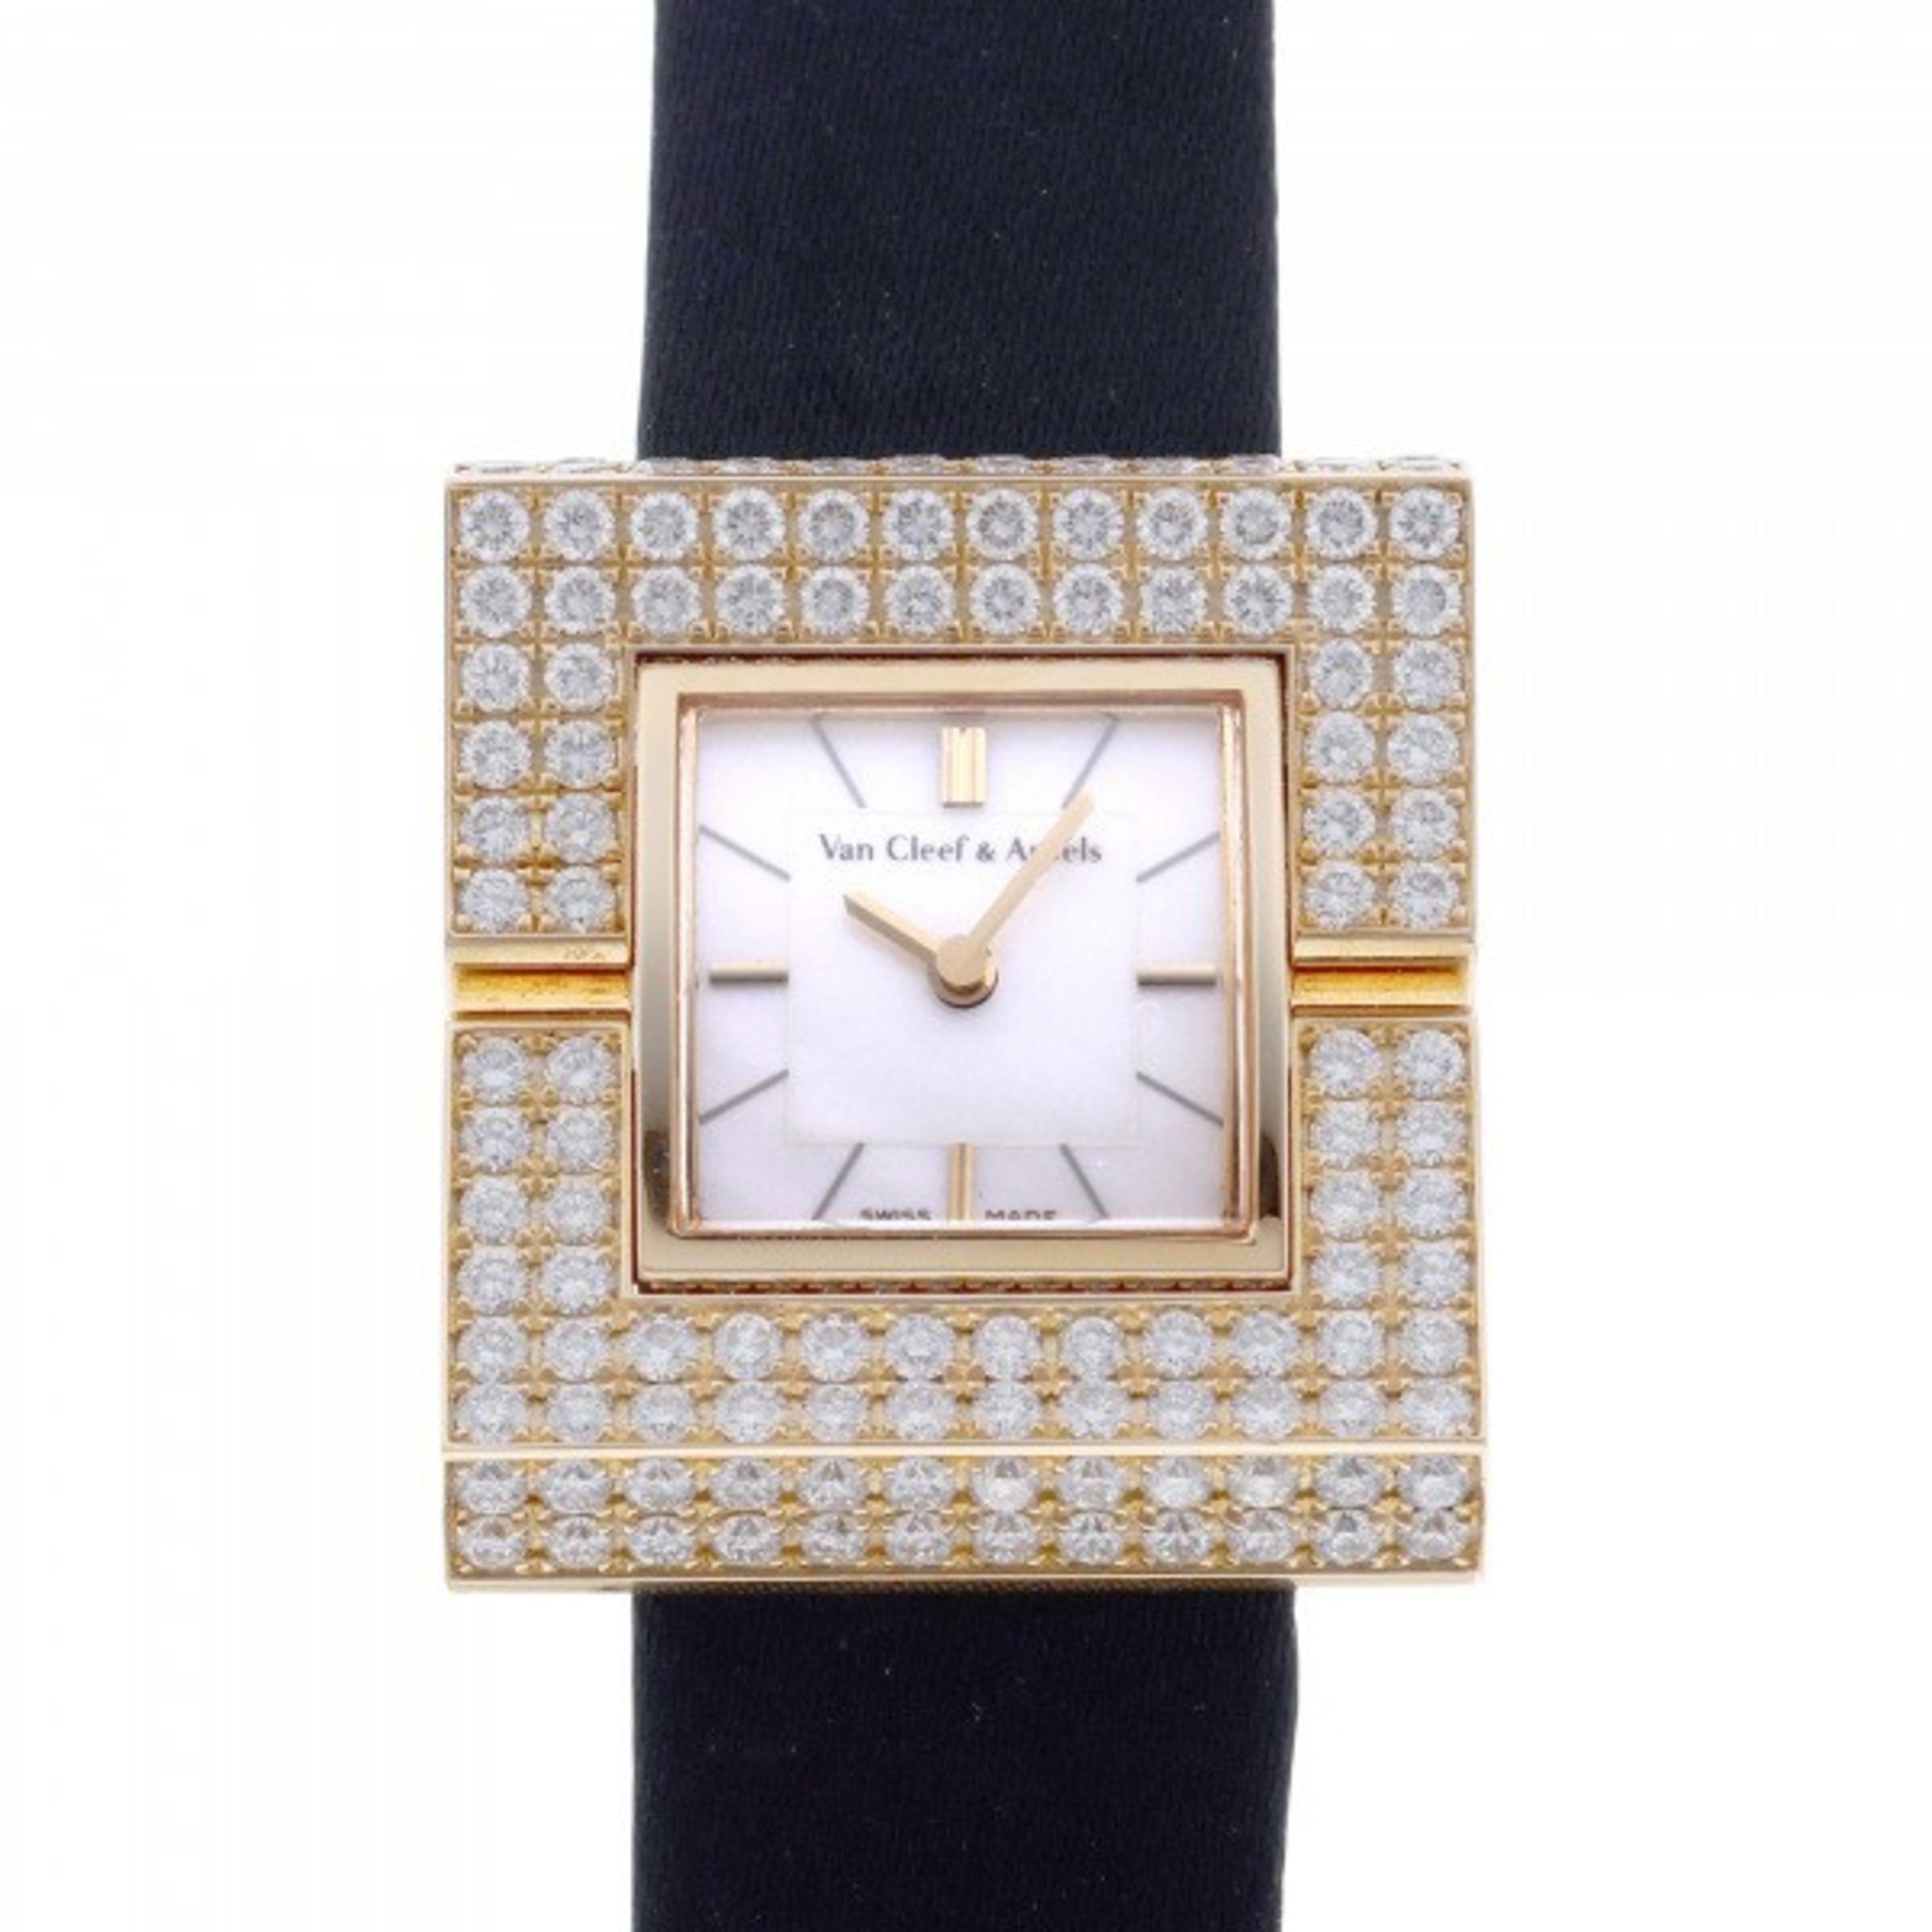 Van Cleef & Arpels 145205 White Dial Watch Ladies